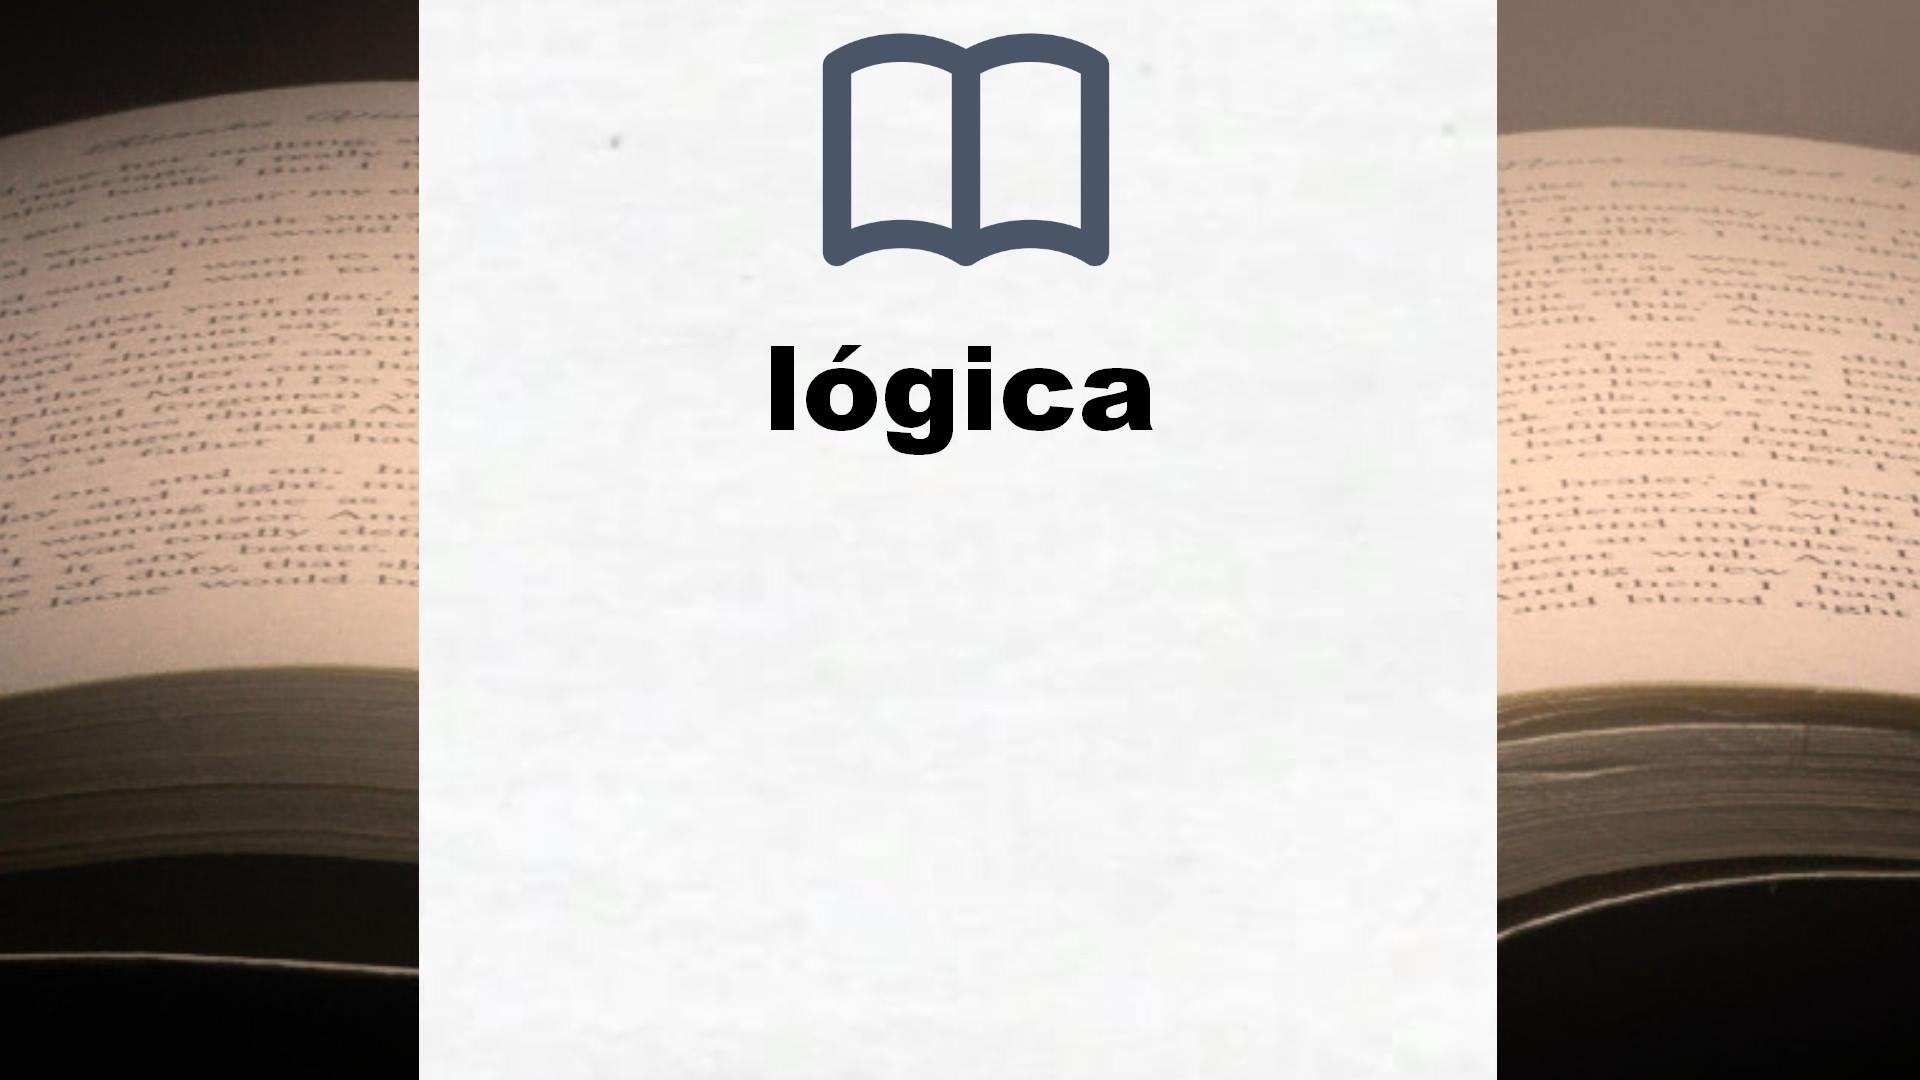 Libros sobre lógica